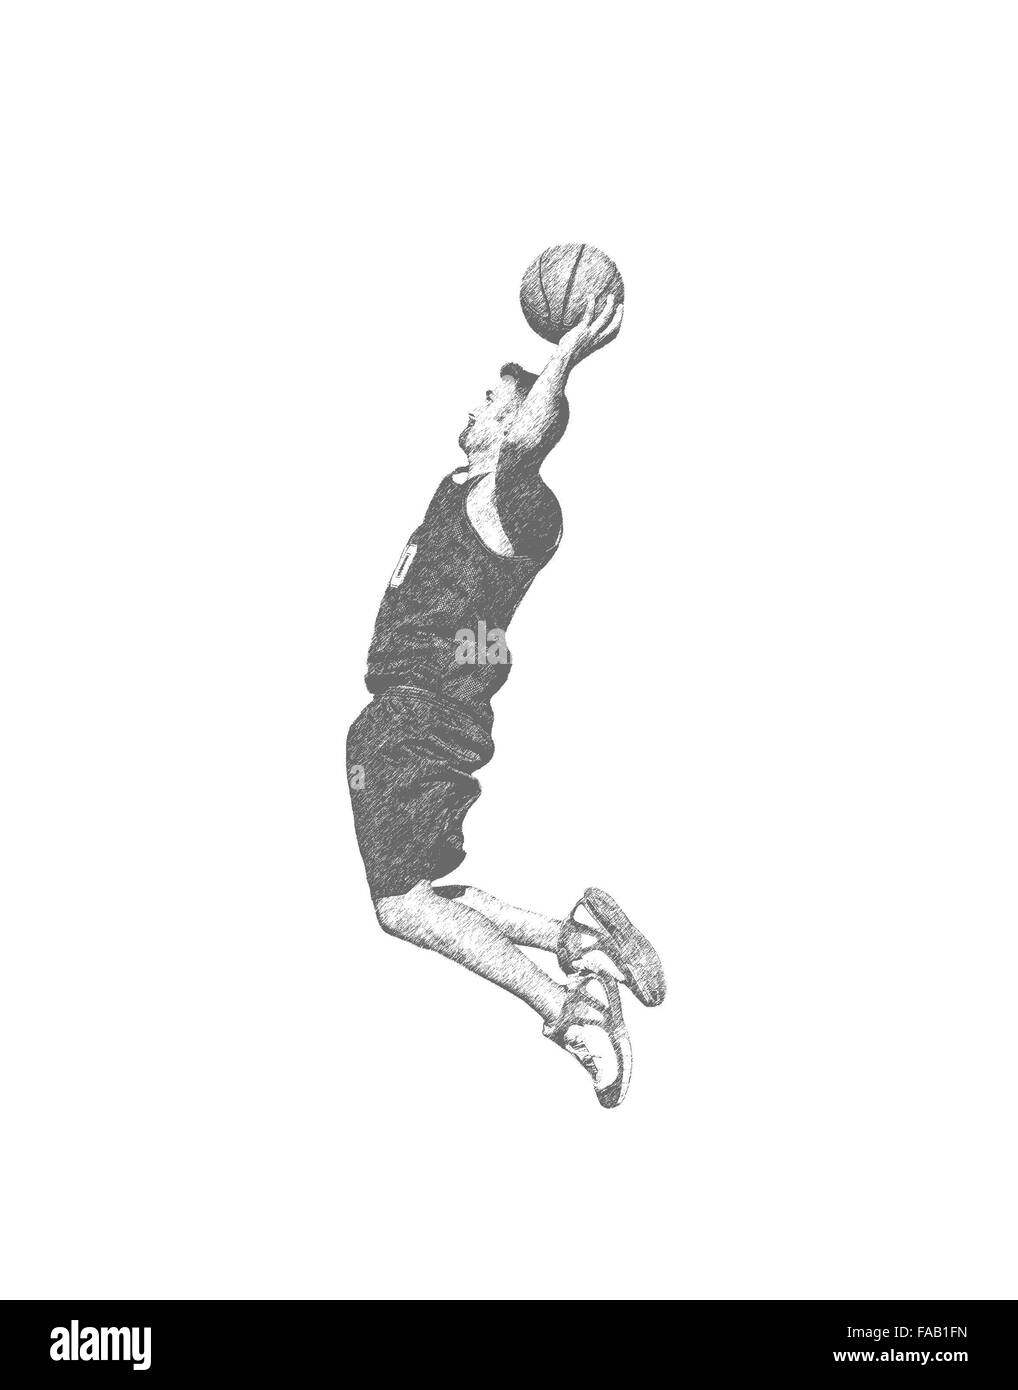 Joueur de basket-ball tir de la balle Banque D'Images